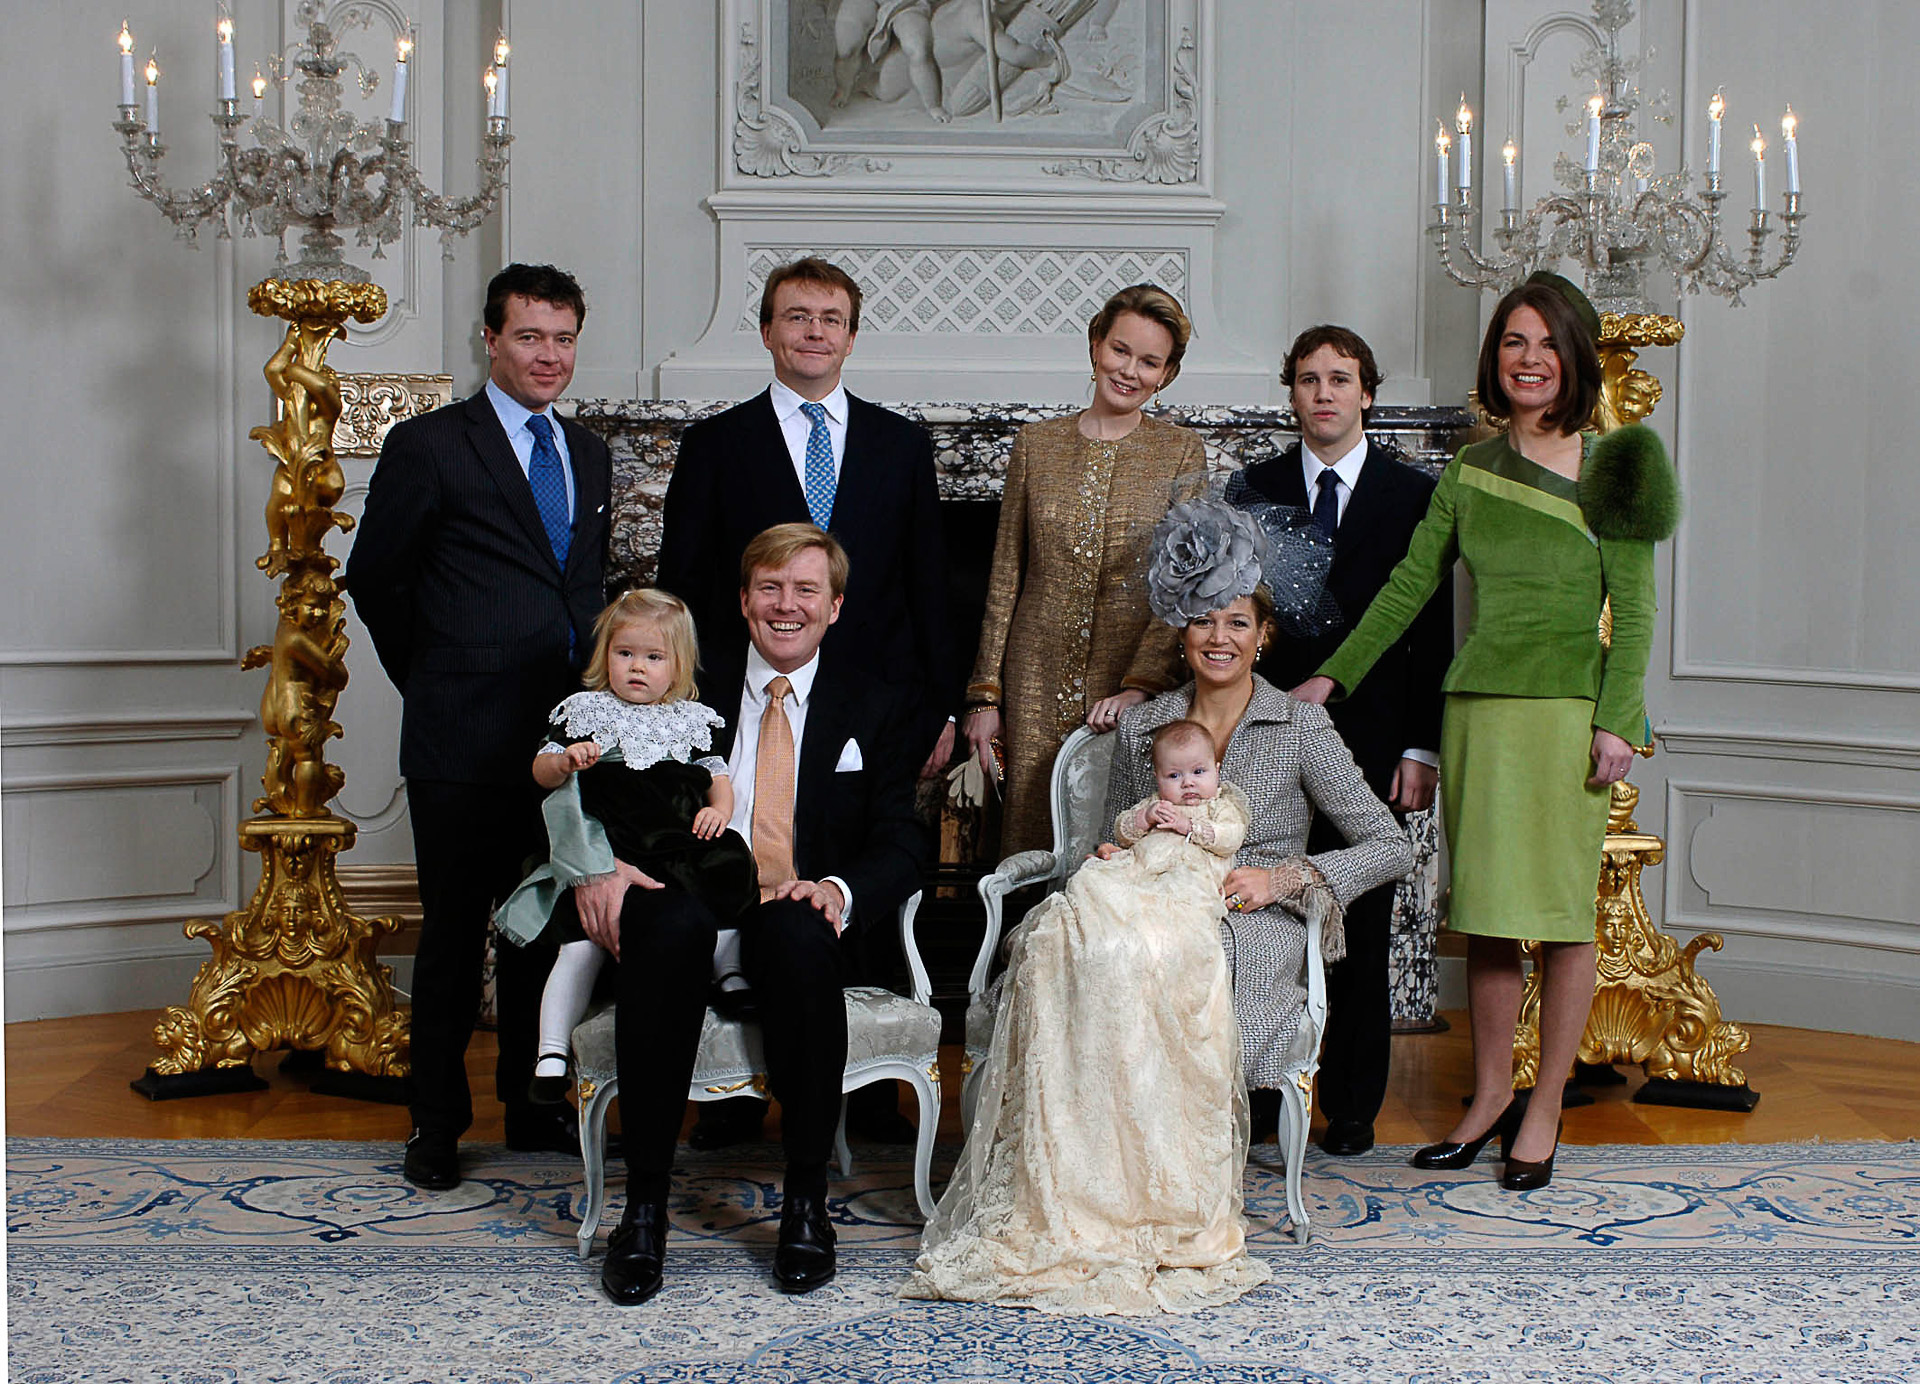 <p>Las fotos más bonitas del Rey Willem-Alexander</p>